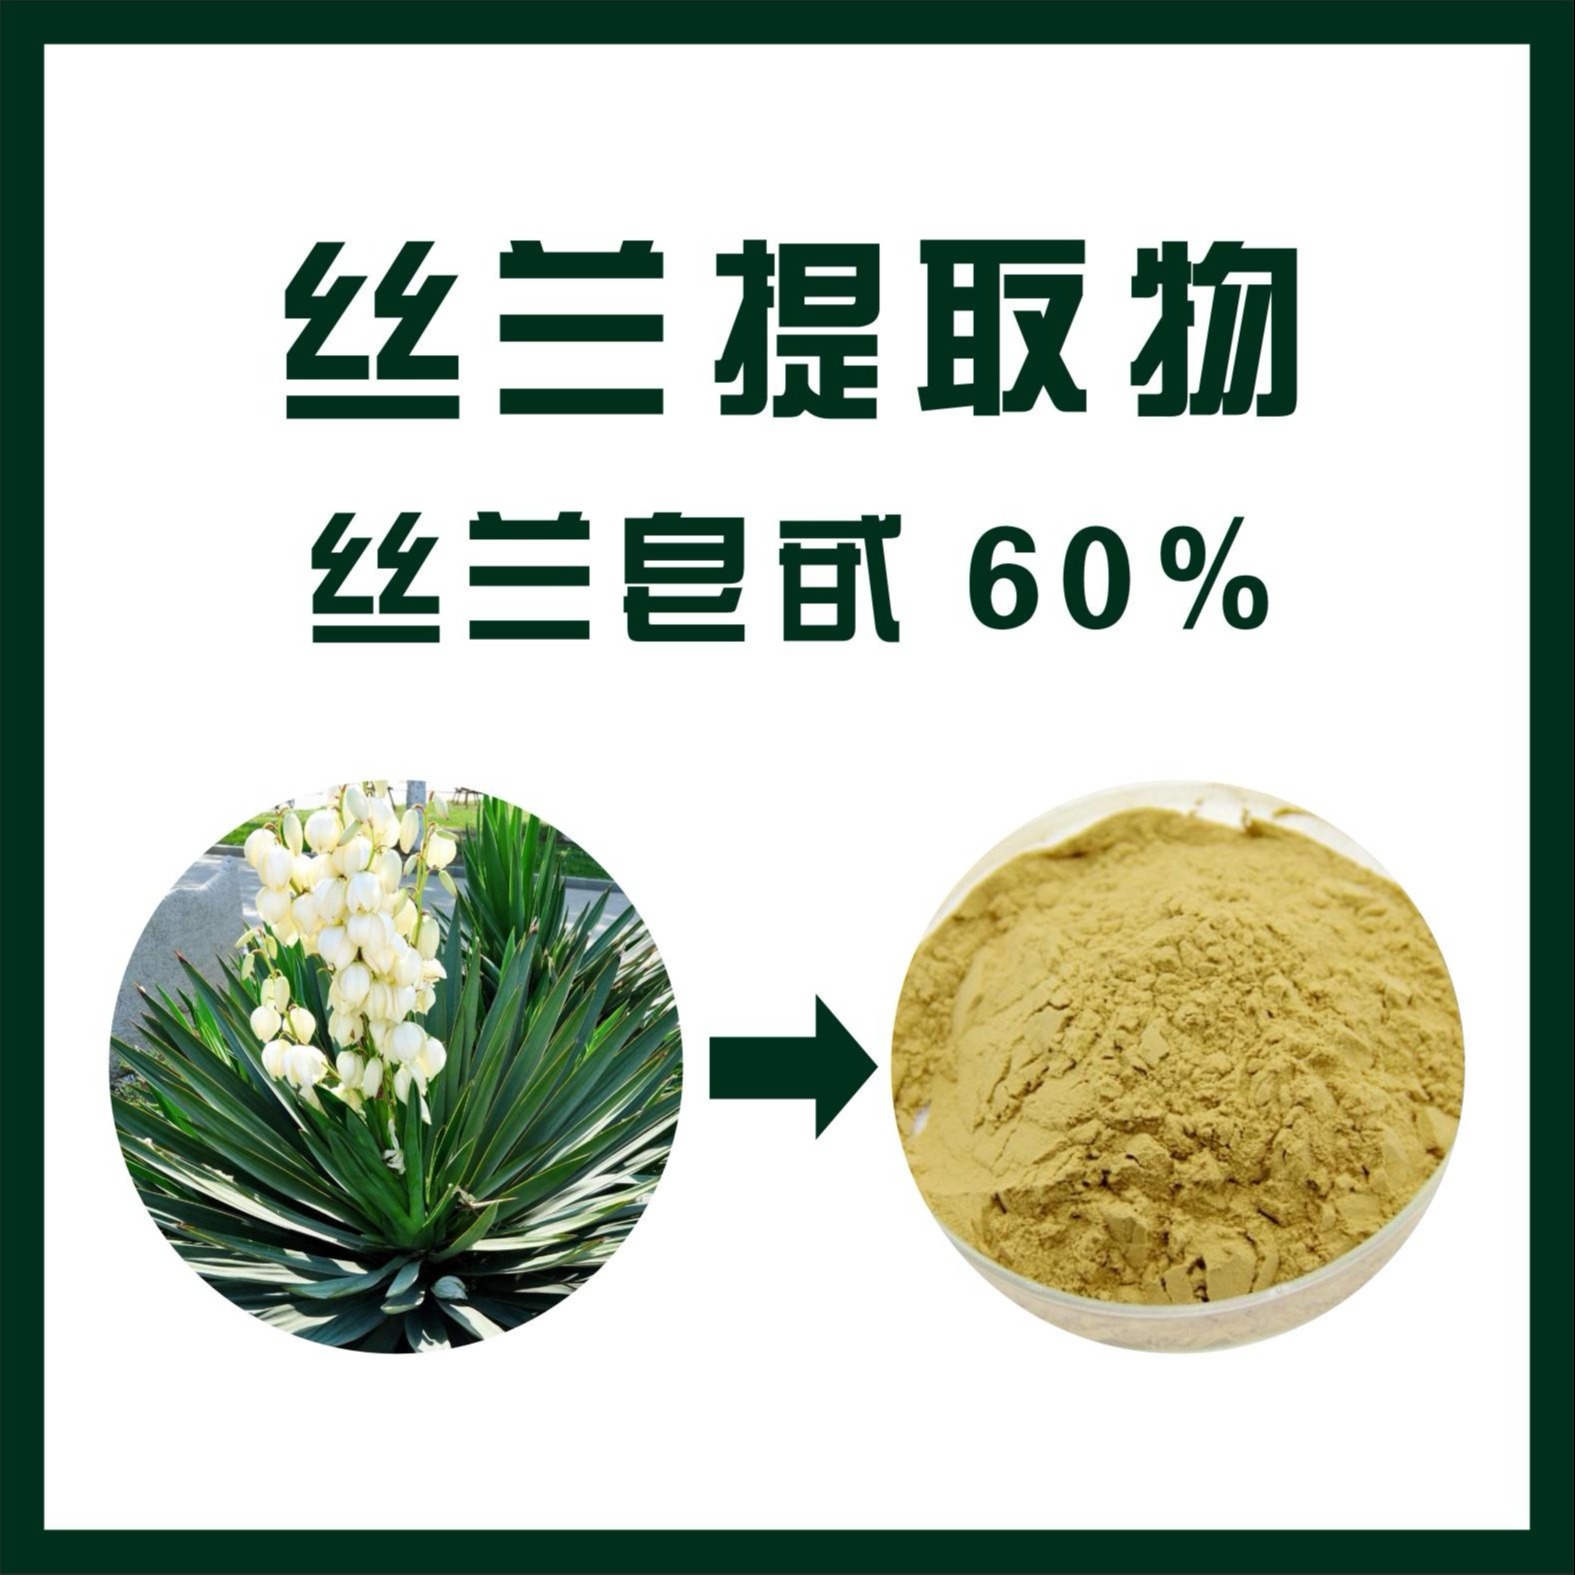 厂家现货供应 丝兰皂甙60% 丝兰提取物 喷雾干燥工艺 陕西新天域生产厂家